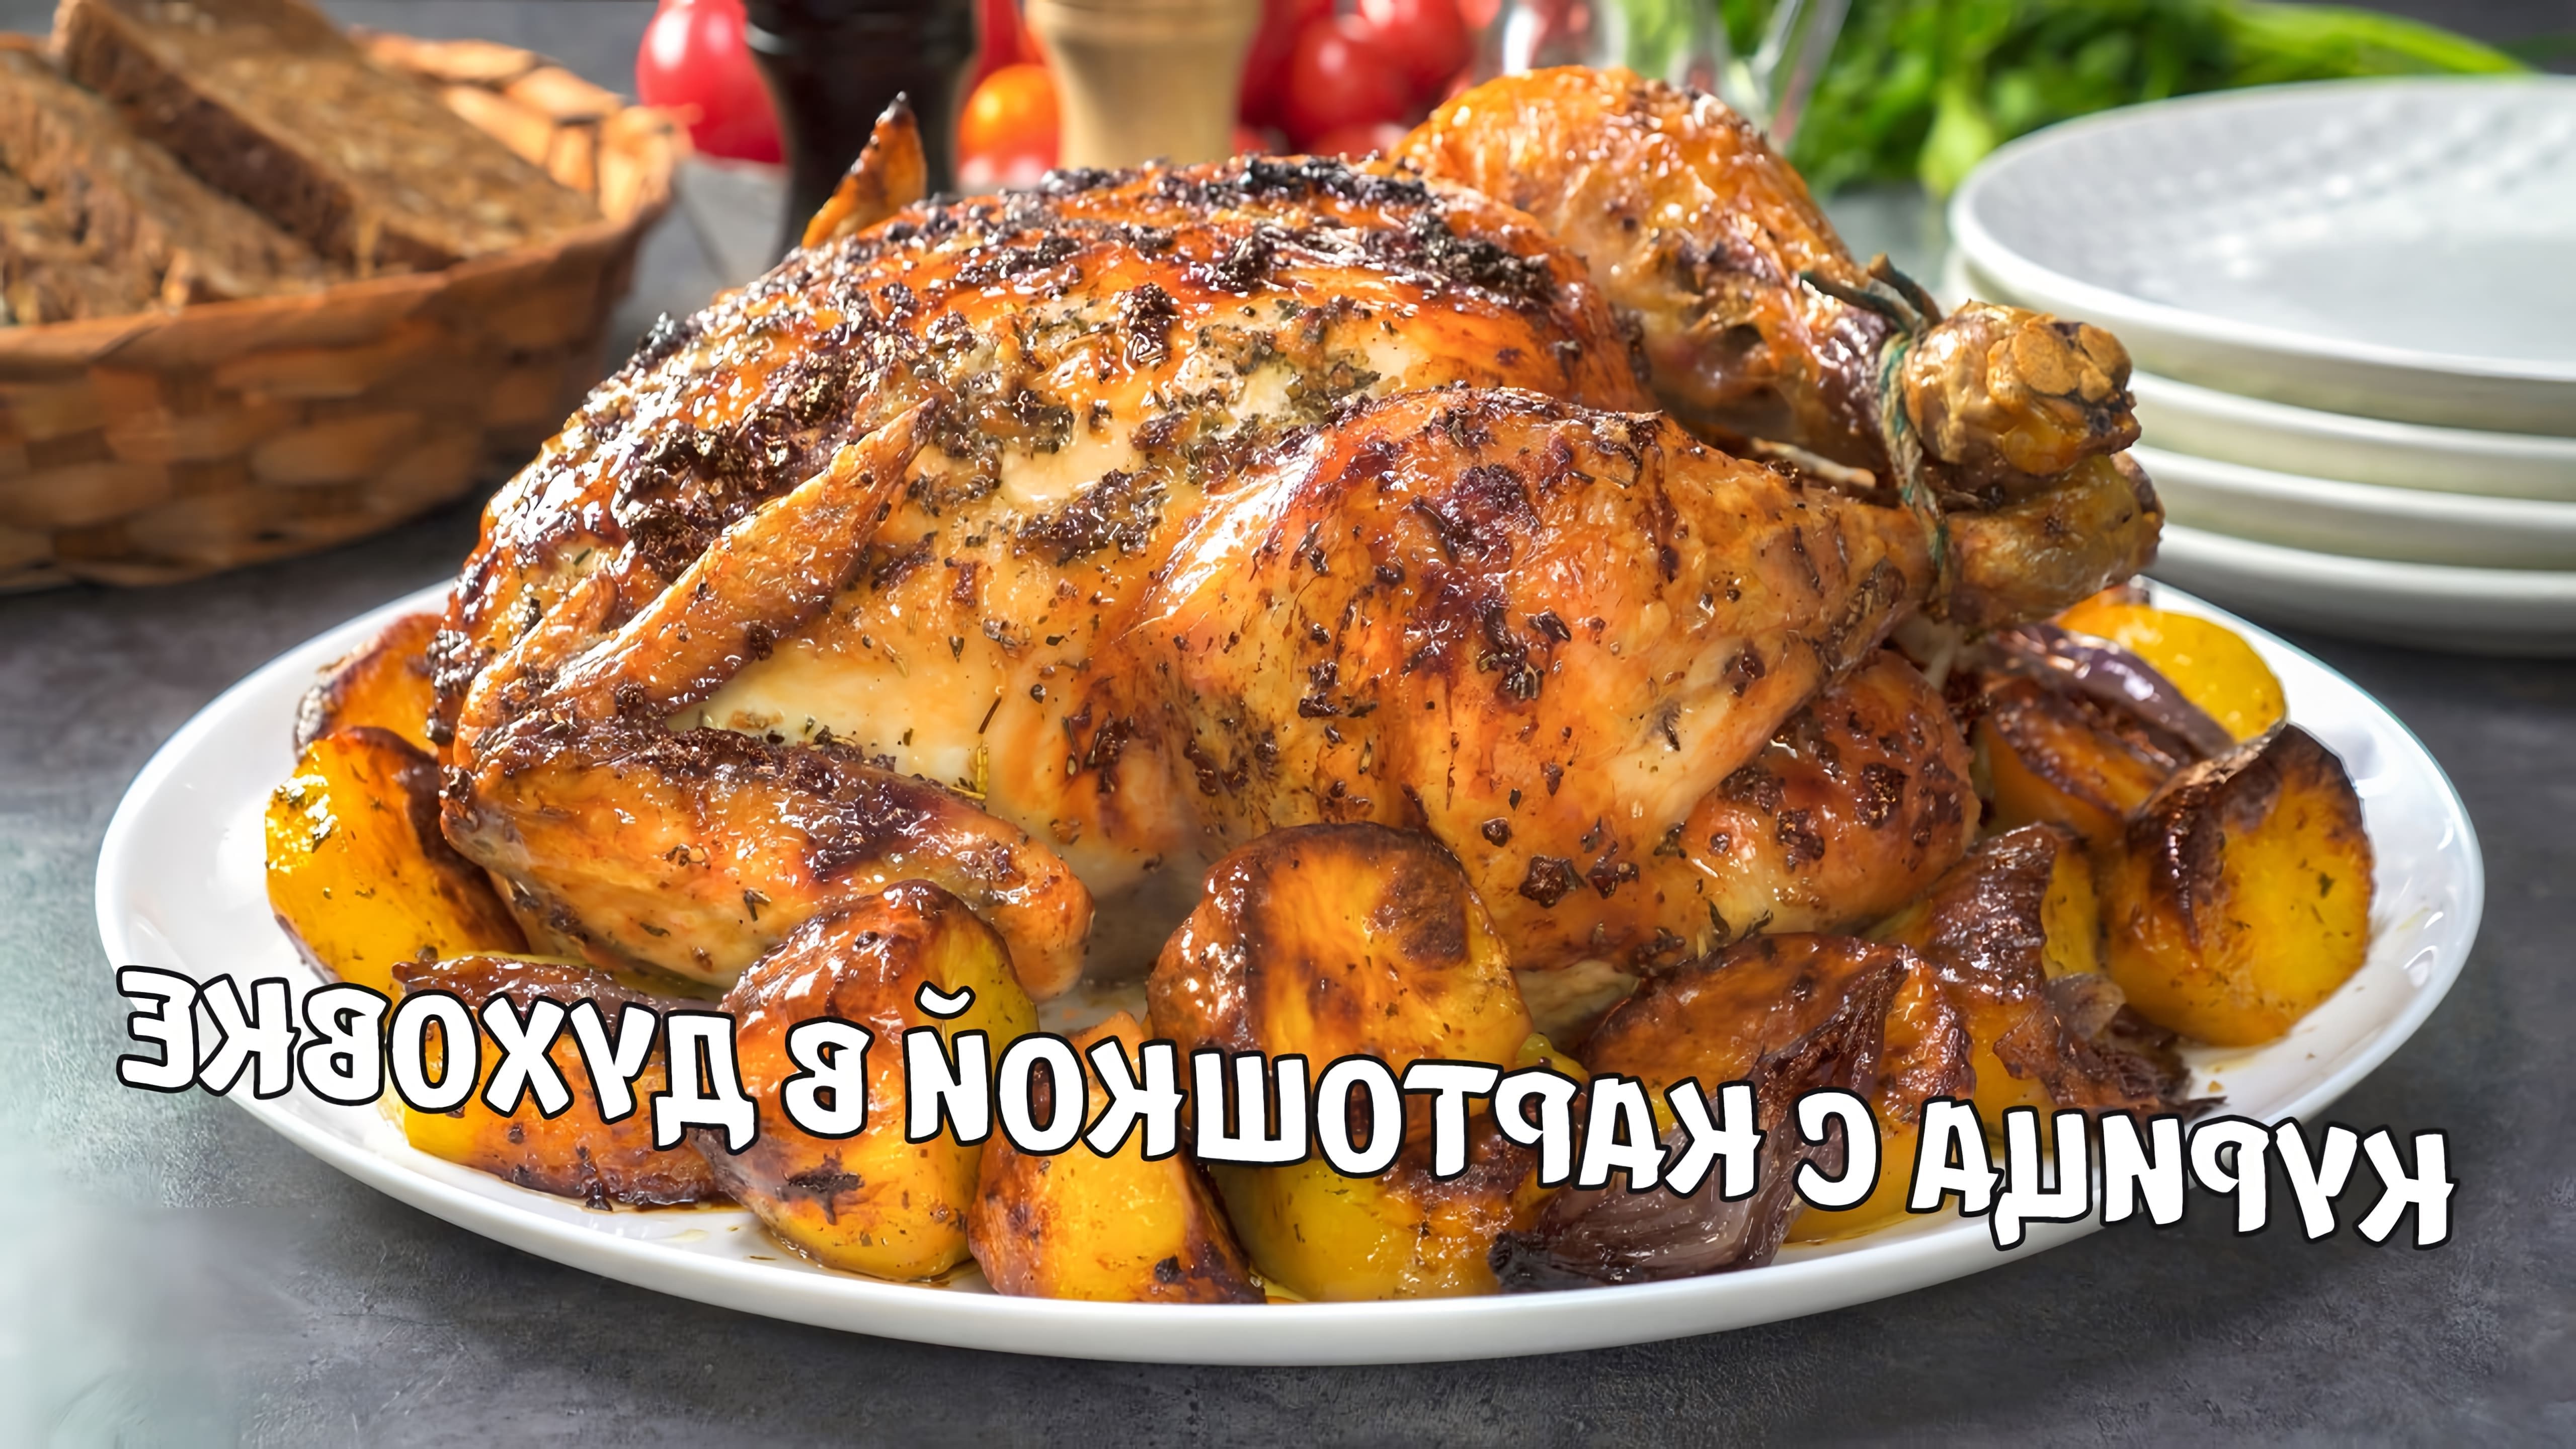 В этом видео демонстрируется рецепт приготовления запеченной курицы с картофелем в духовке